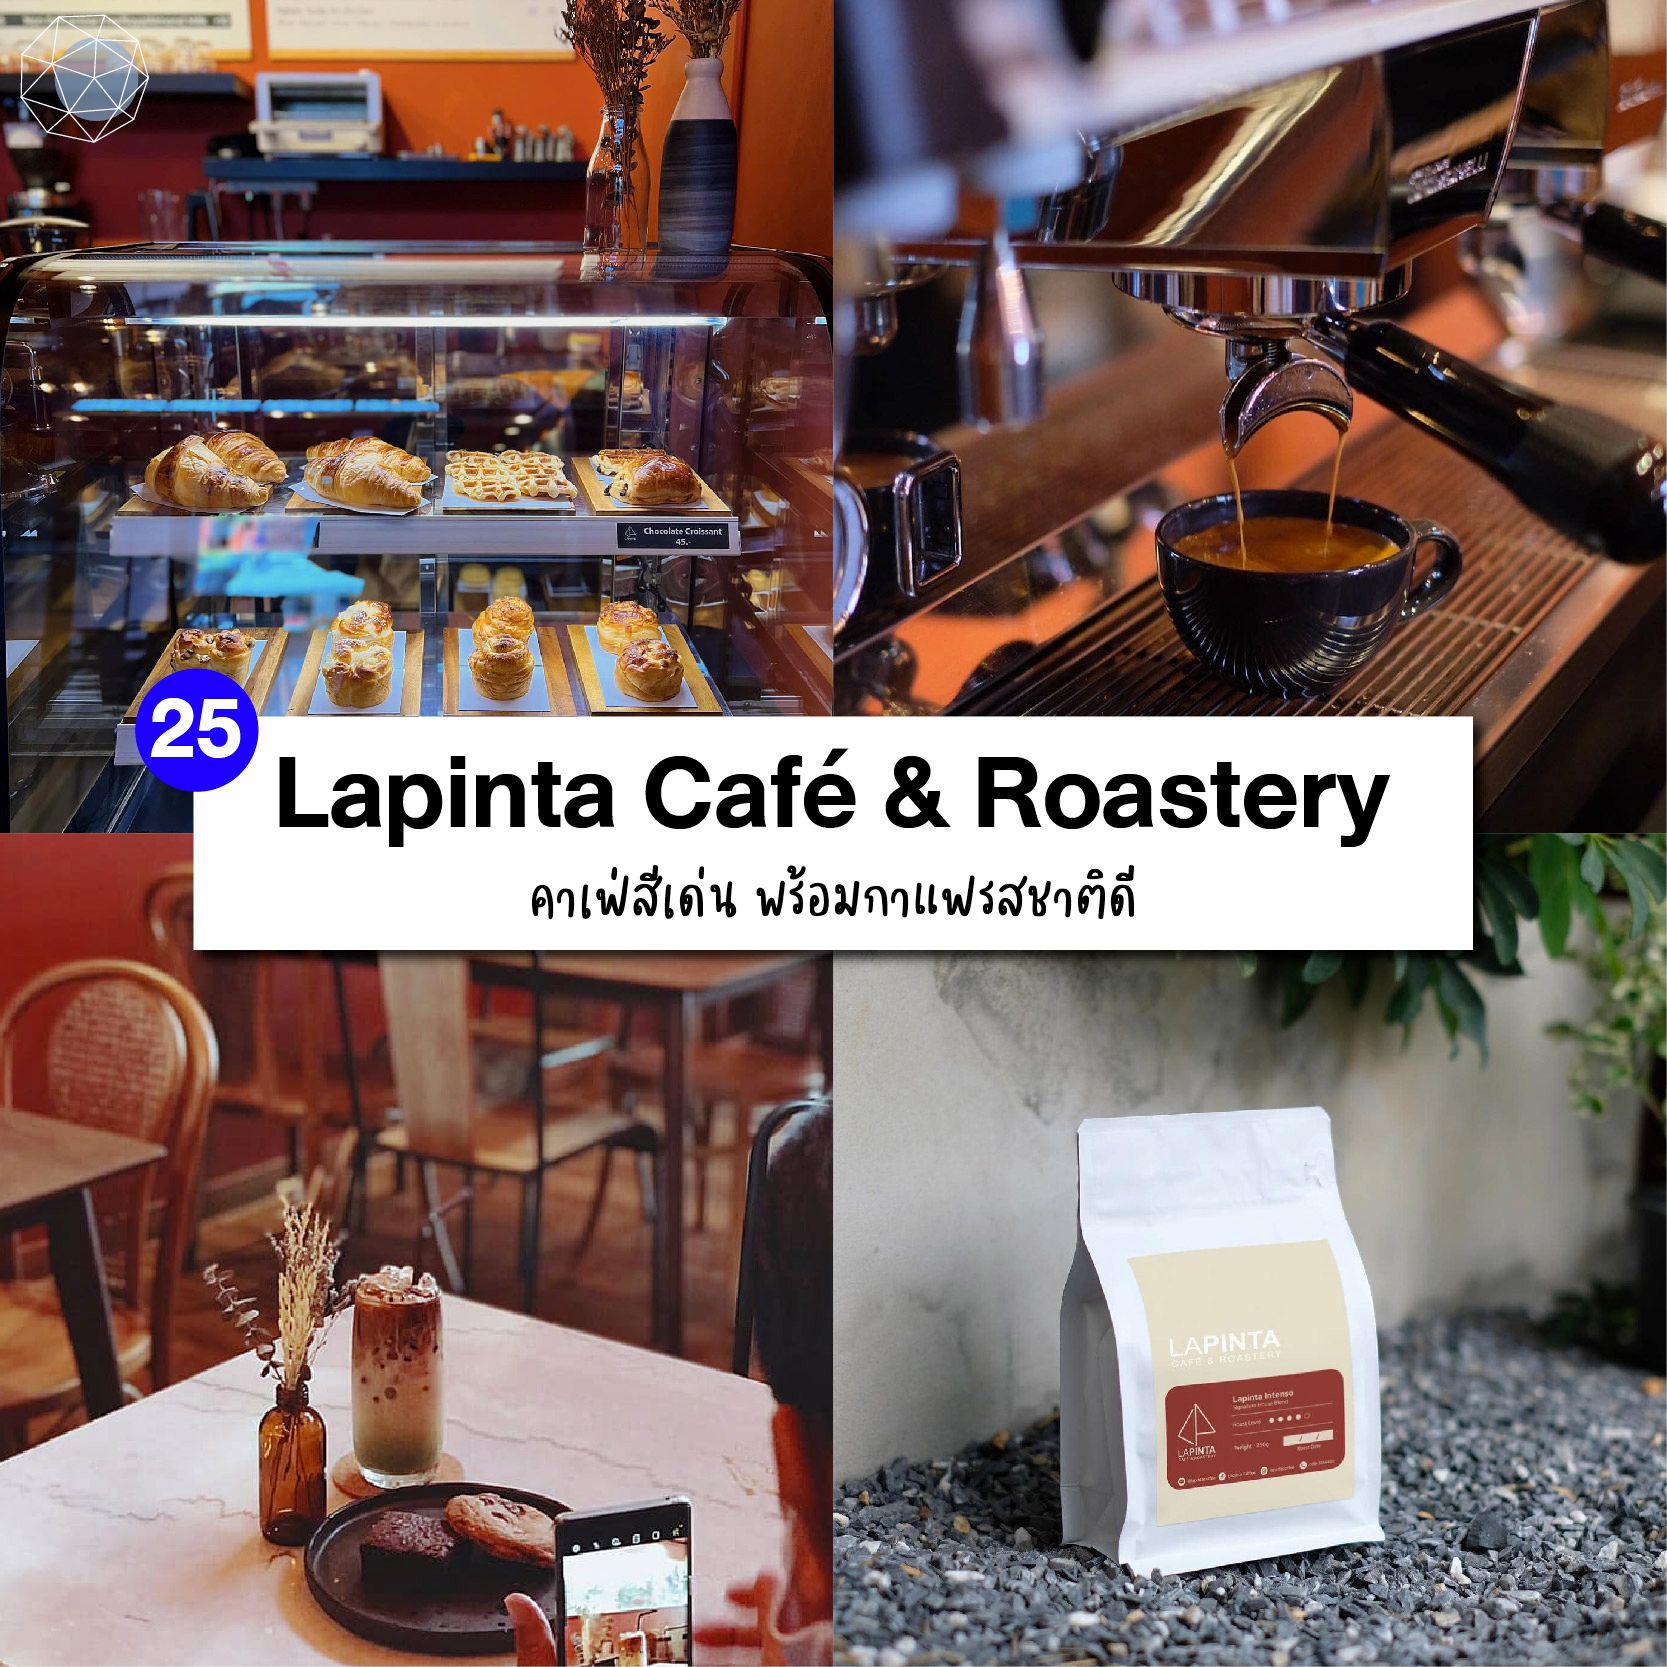 คาเฟ่บางนา Lapinta Café & Roastery